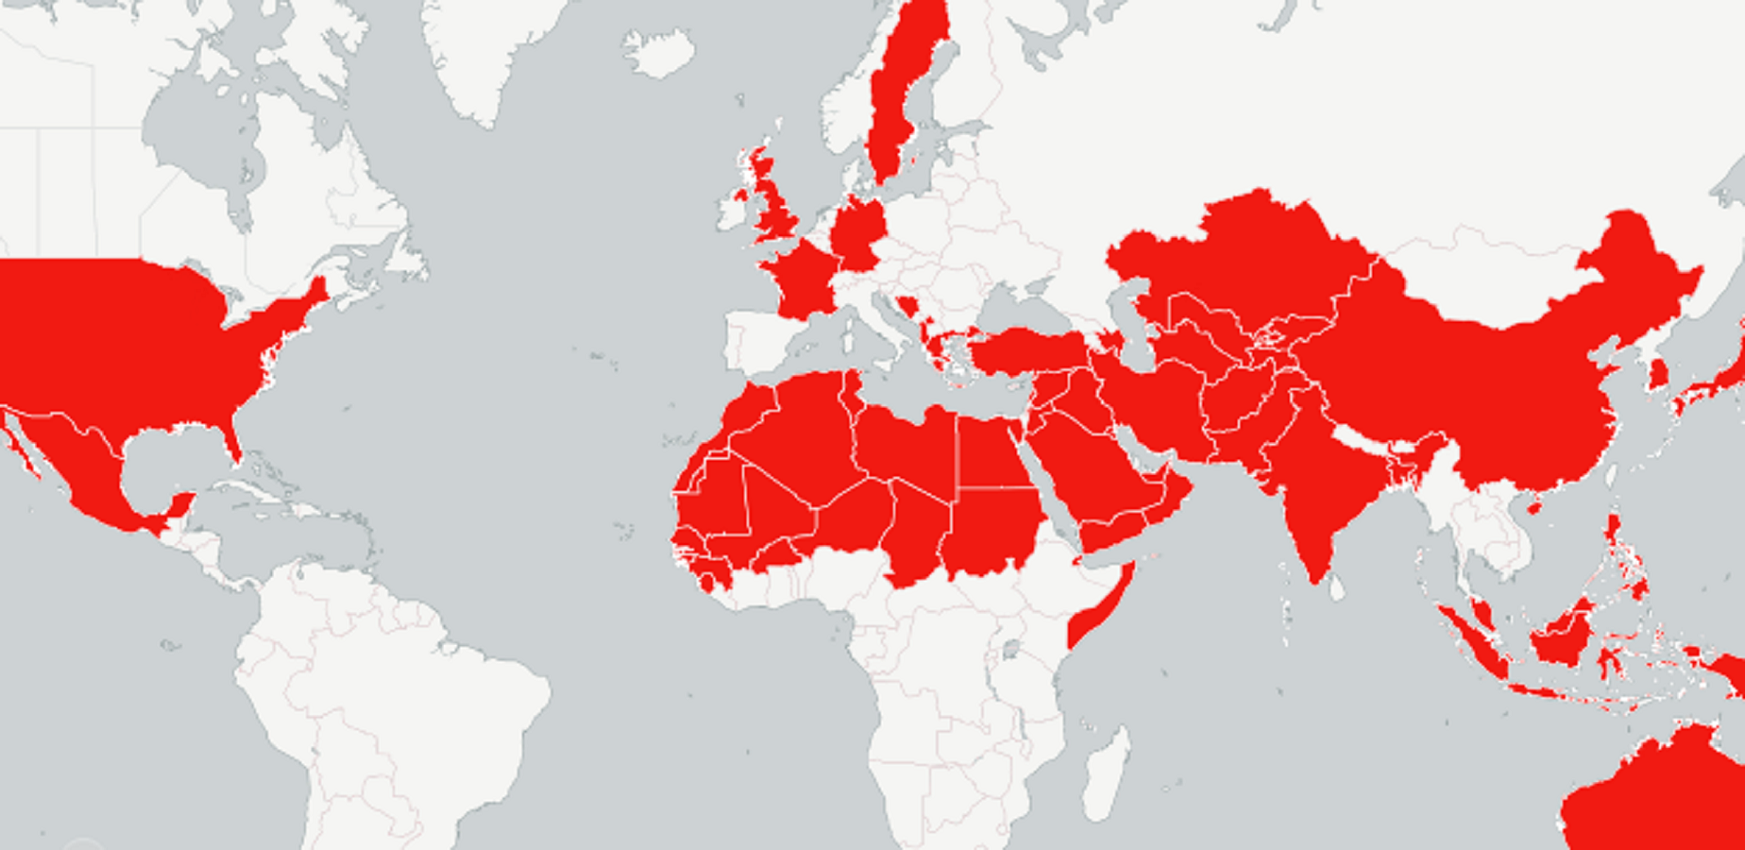 Mapa de los países a los que Trump ha ofendido